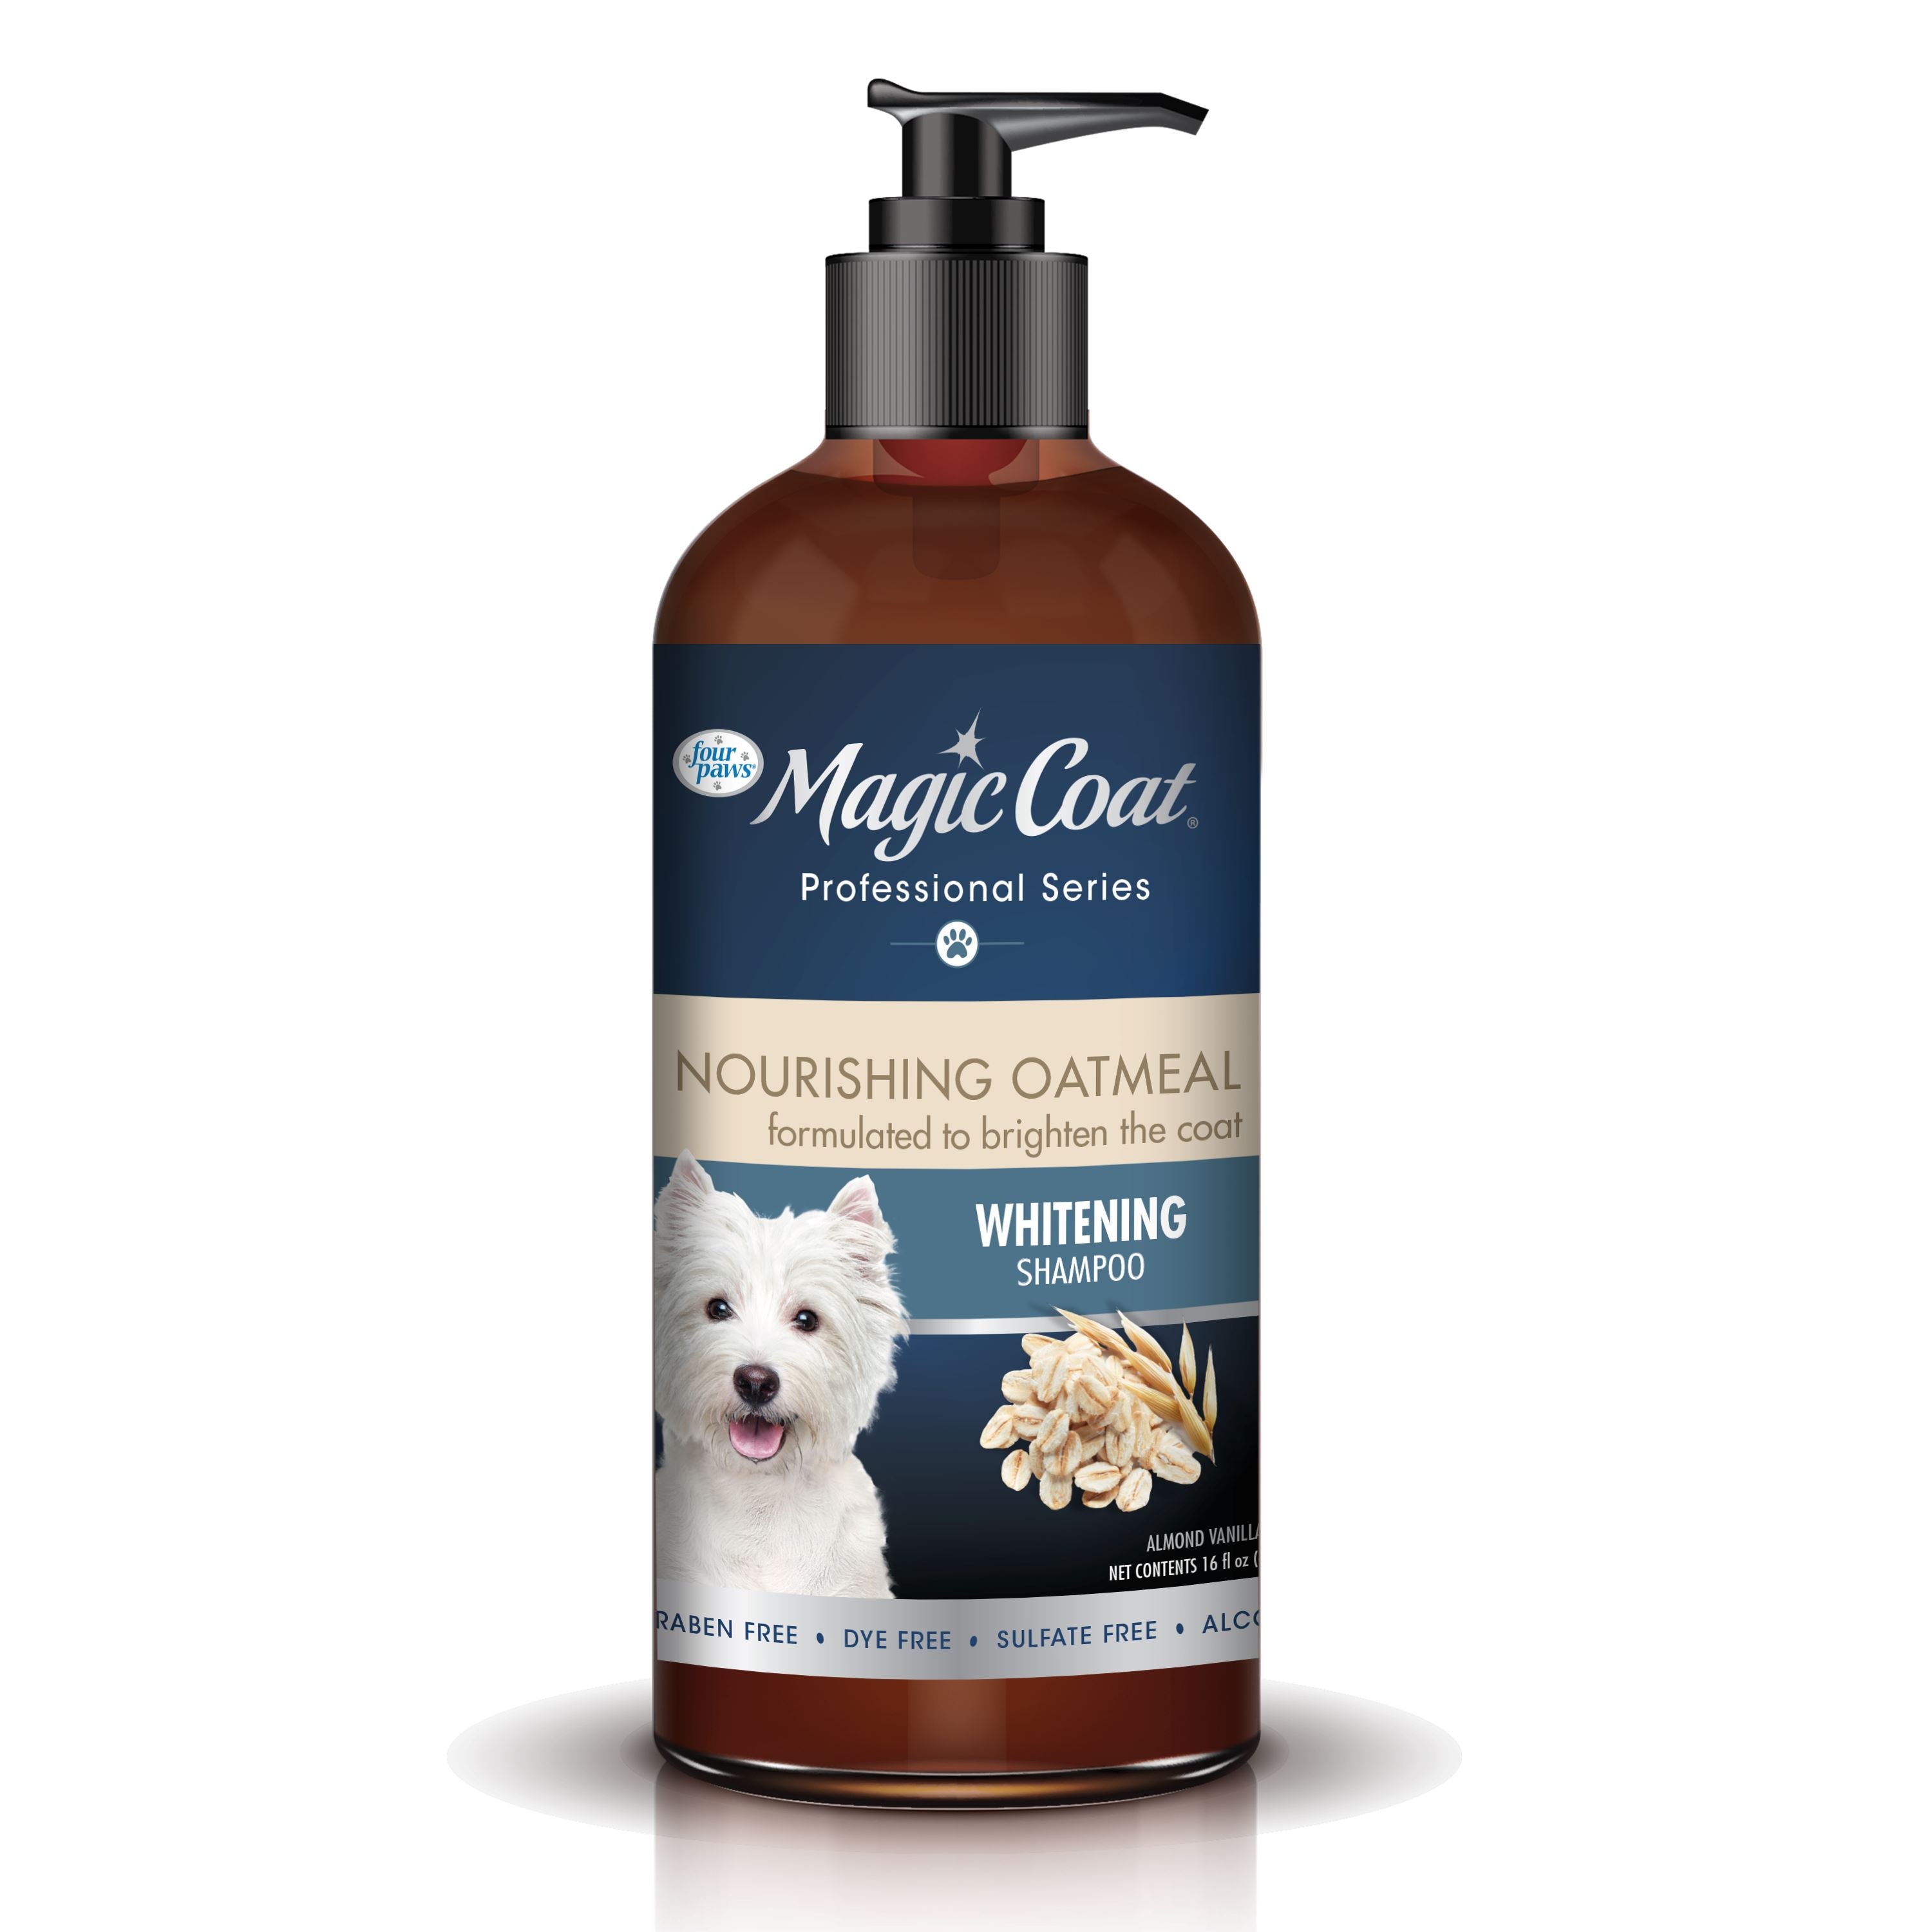 Four Paws Magic Coat Professional Series Nourishing Oatmeal Dog Whitening Shampoo Dog Whitening - 16 Fl. Oz  